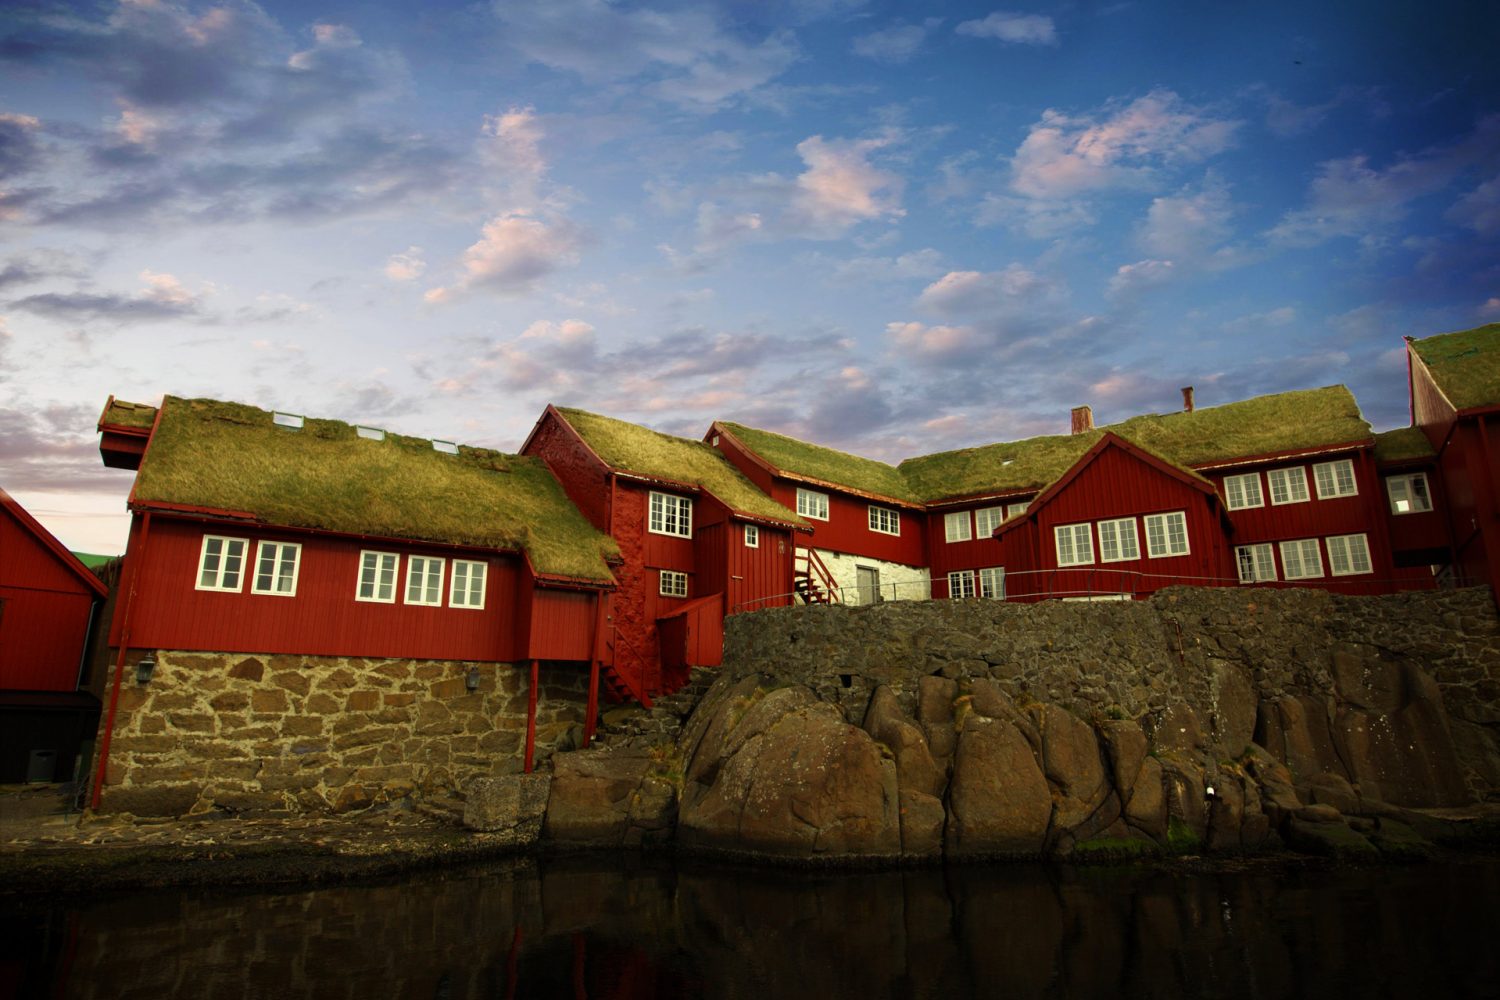 The capital city of Torshavn in the Faroe Islands